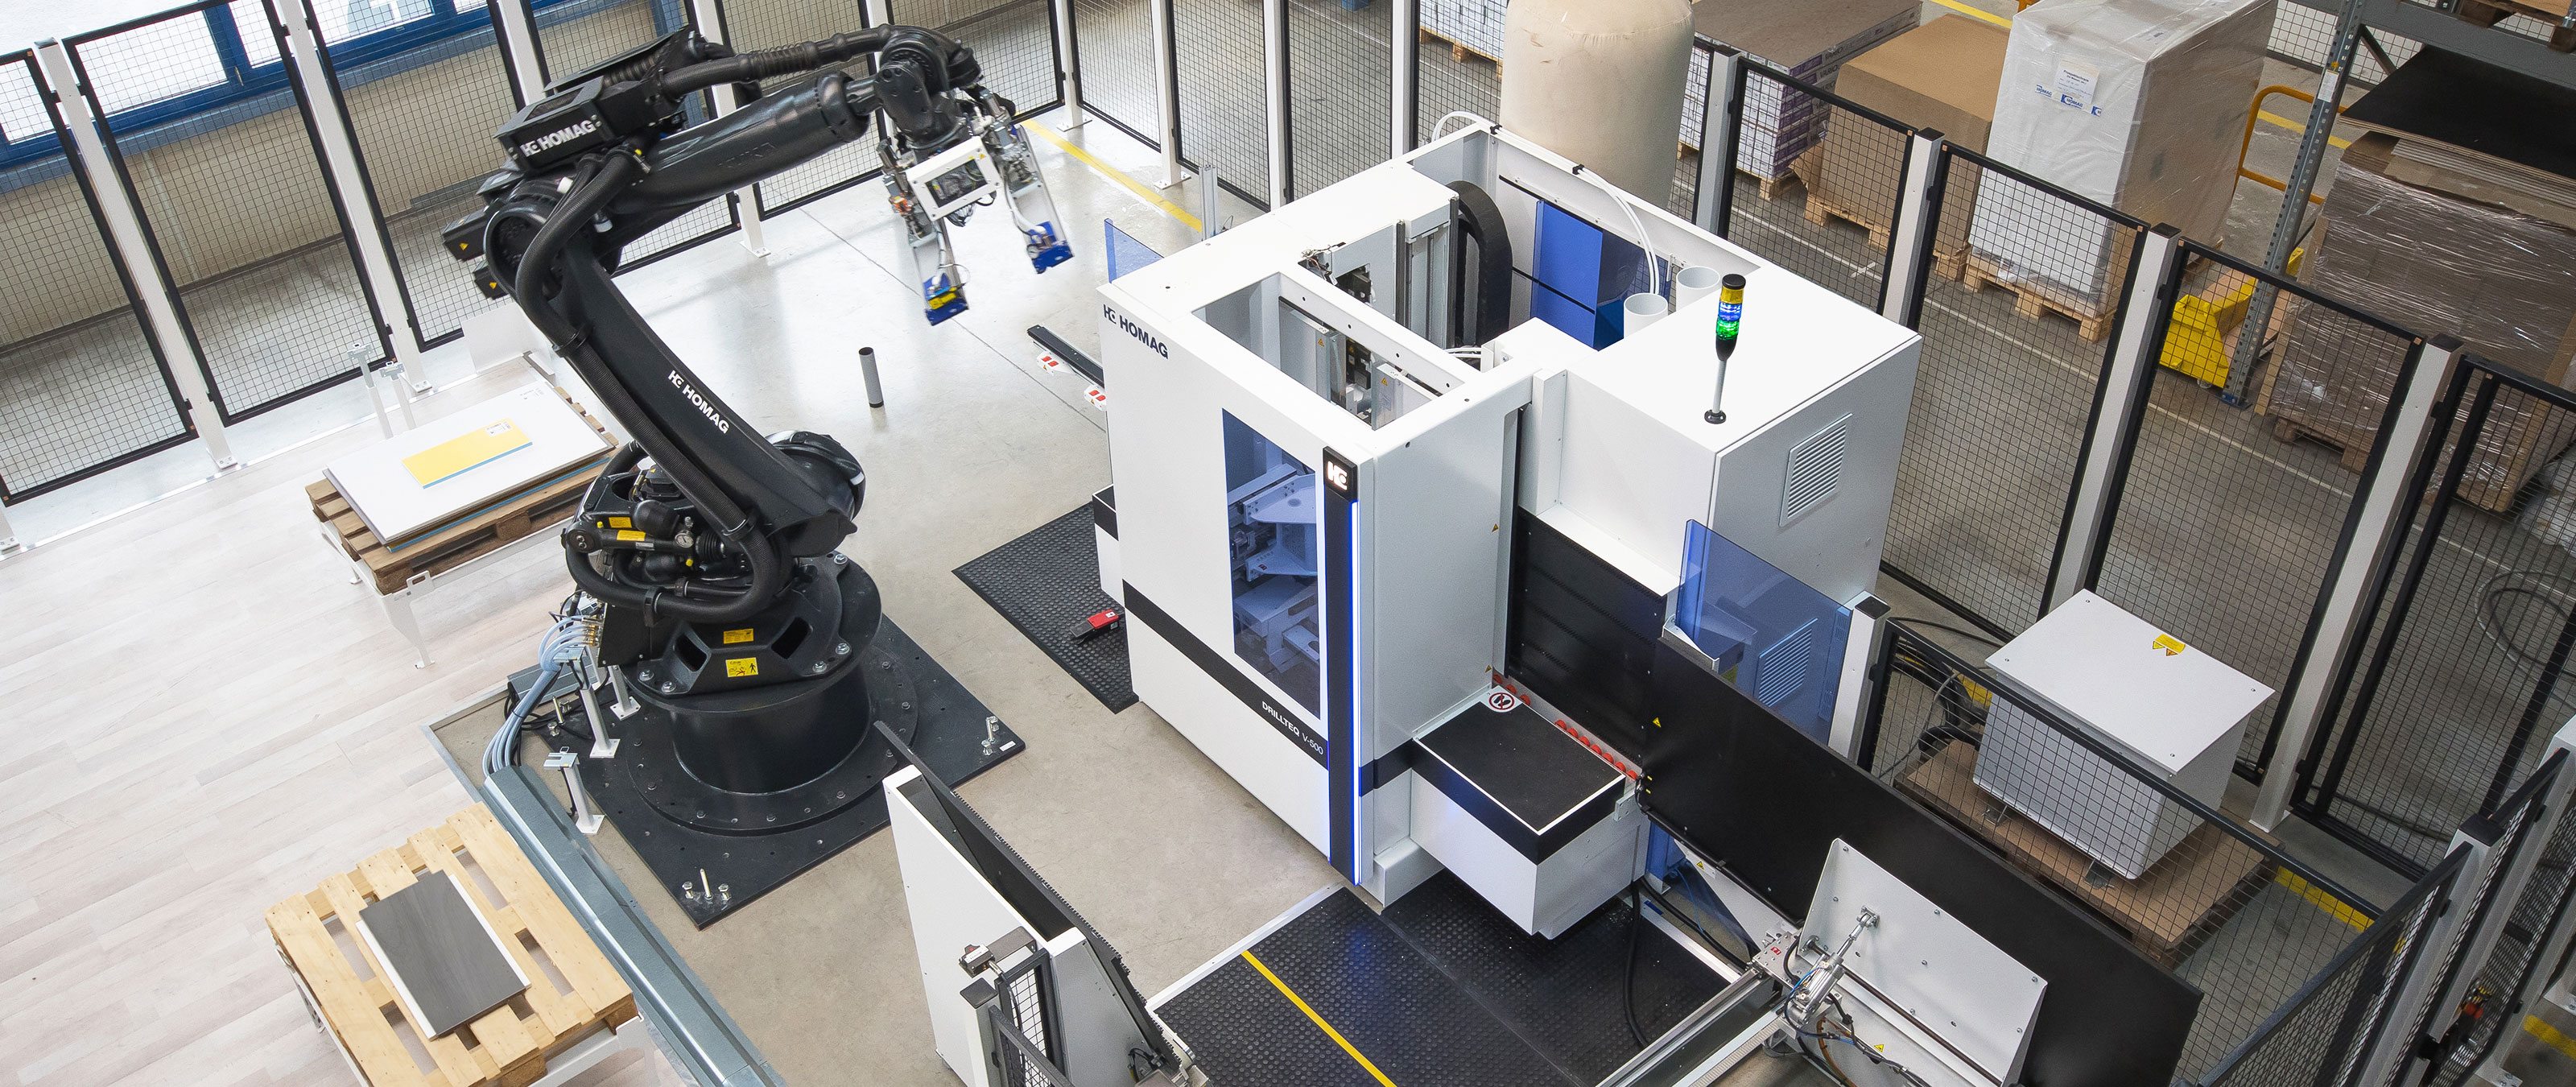 縦型 CNC マシニングセンター DRILLTEQ V-500 のロボットハンドリング FEEDBOT D-300